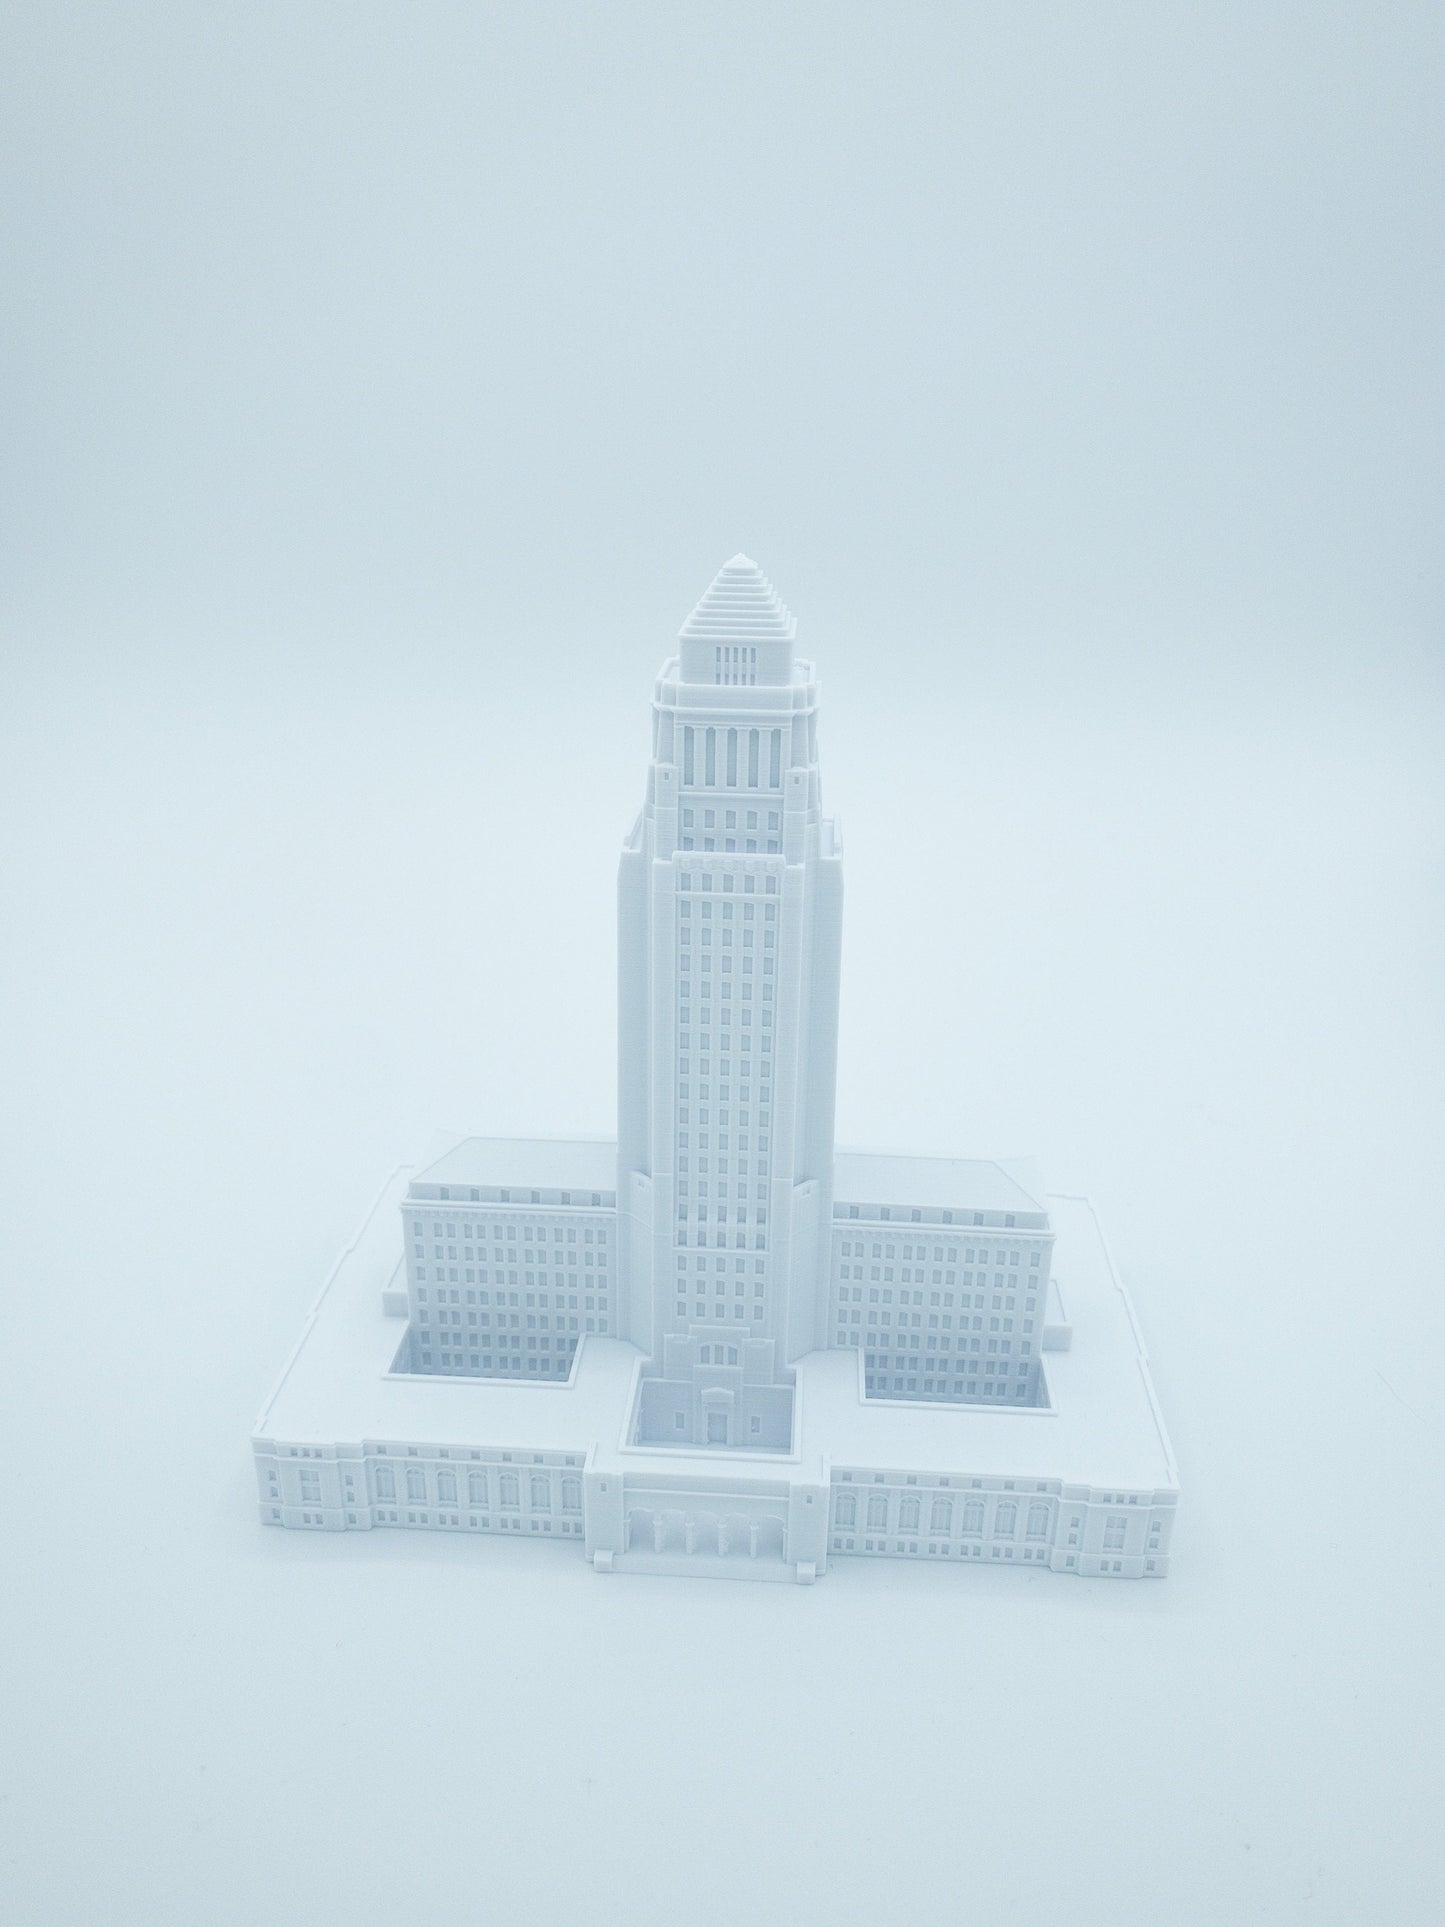 LA City Hall Model- 3D Printed